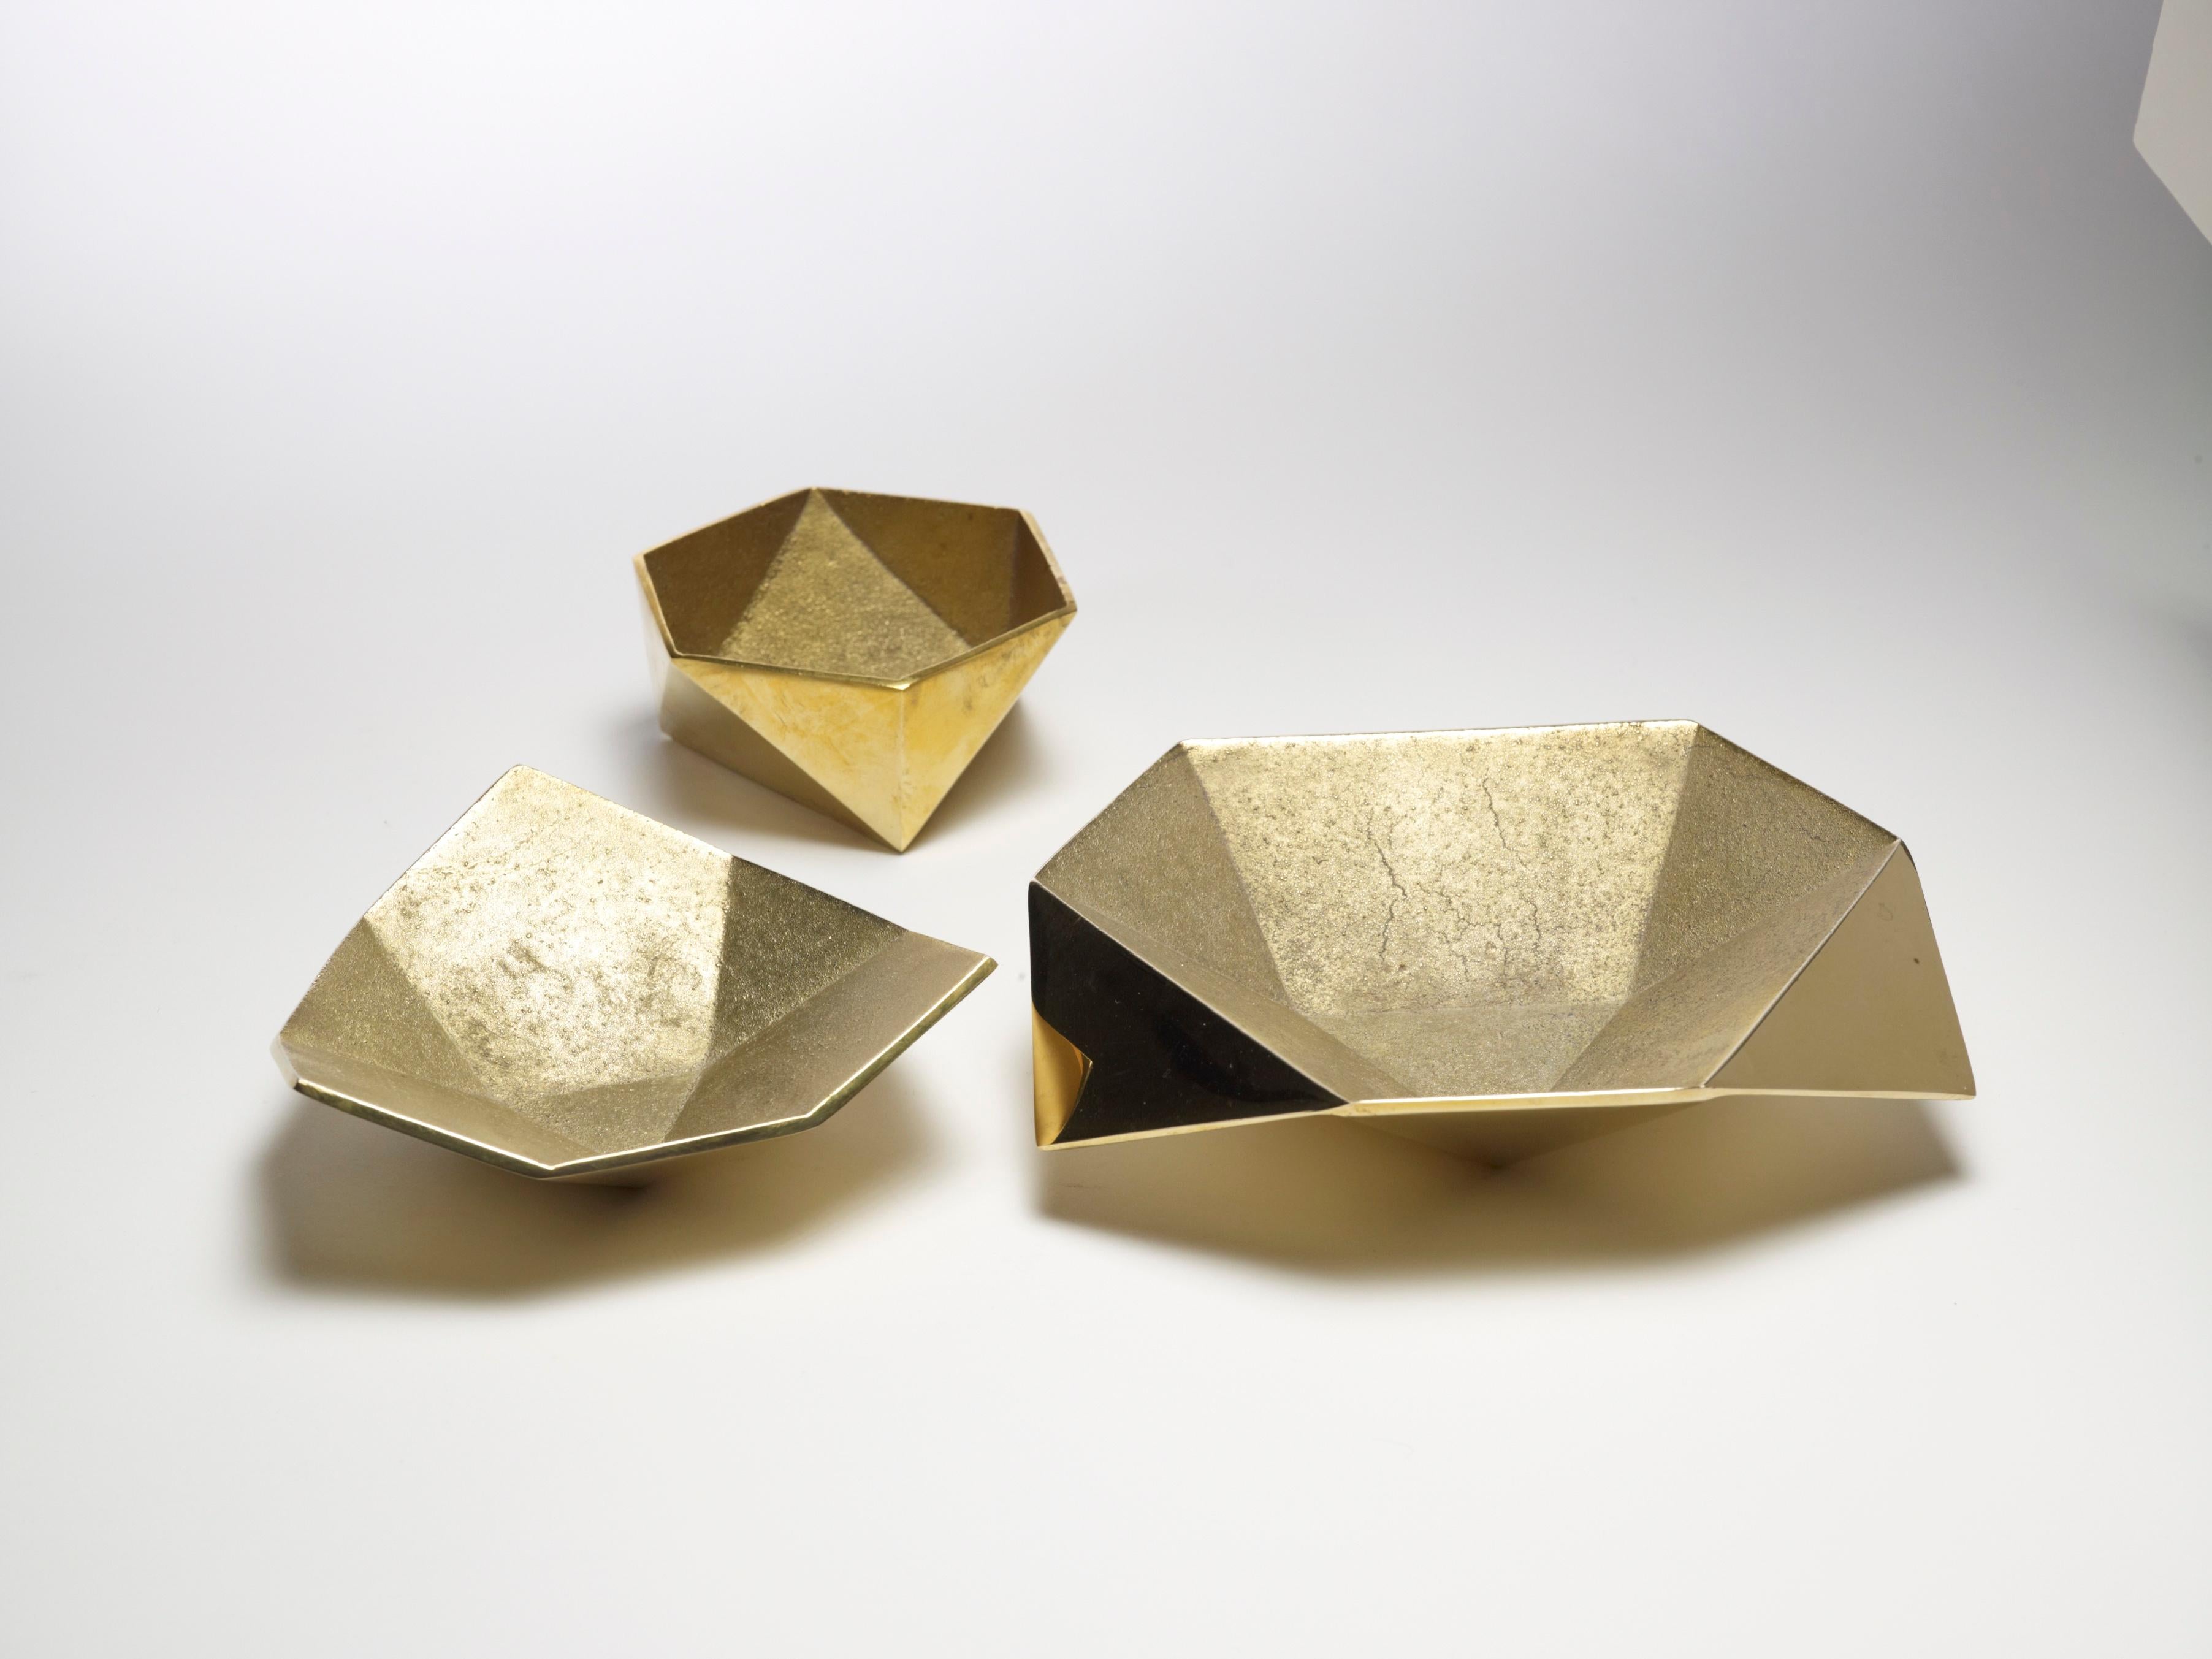 Diese gegossenen Metallgefäße sind den Origami-Formen nachempfunden. Erhältlich in Messing und Aluminium. Satz von drei.

AKMD wurde 2011 gegründet und entstand aus einer dreizehnjährigen Freundschaft und Design Collaboration zwischen Ayush Kasliwal